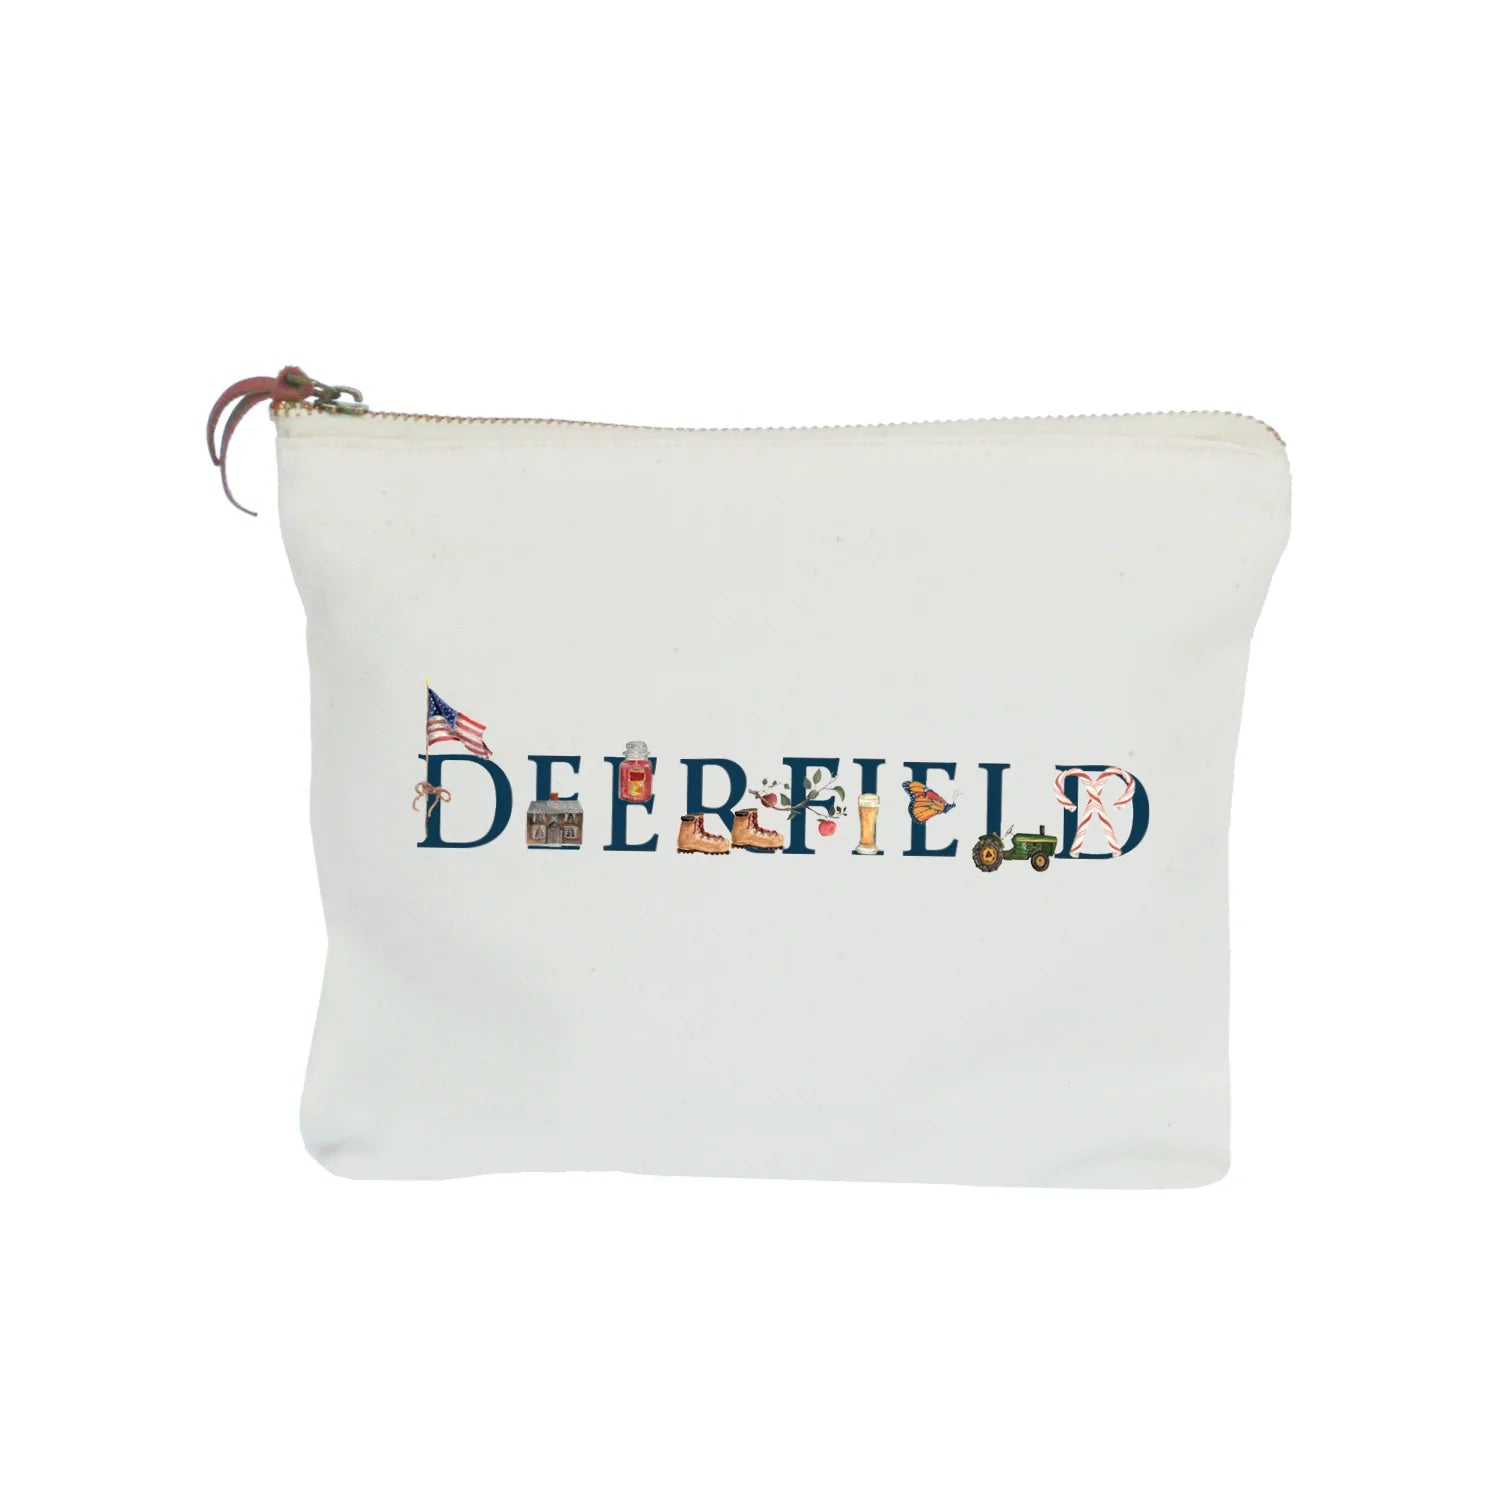 deerfield zipper pouch